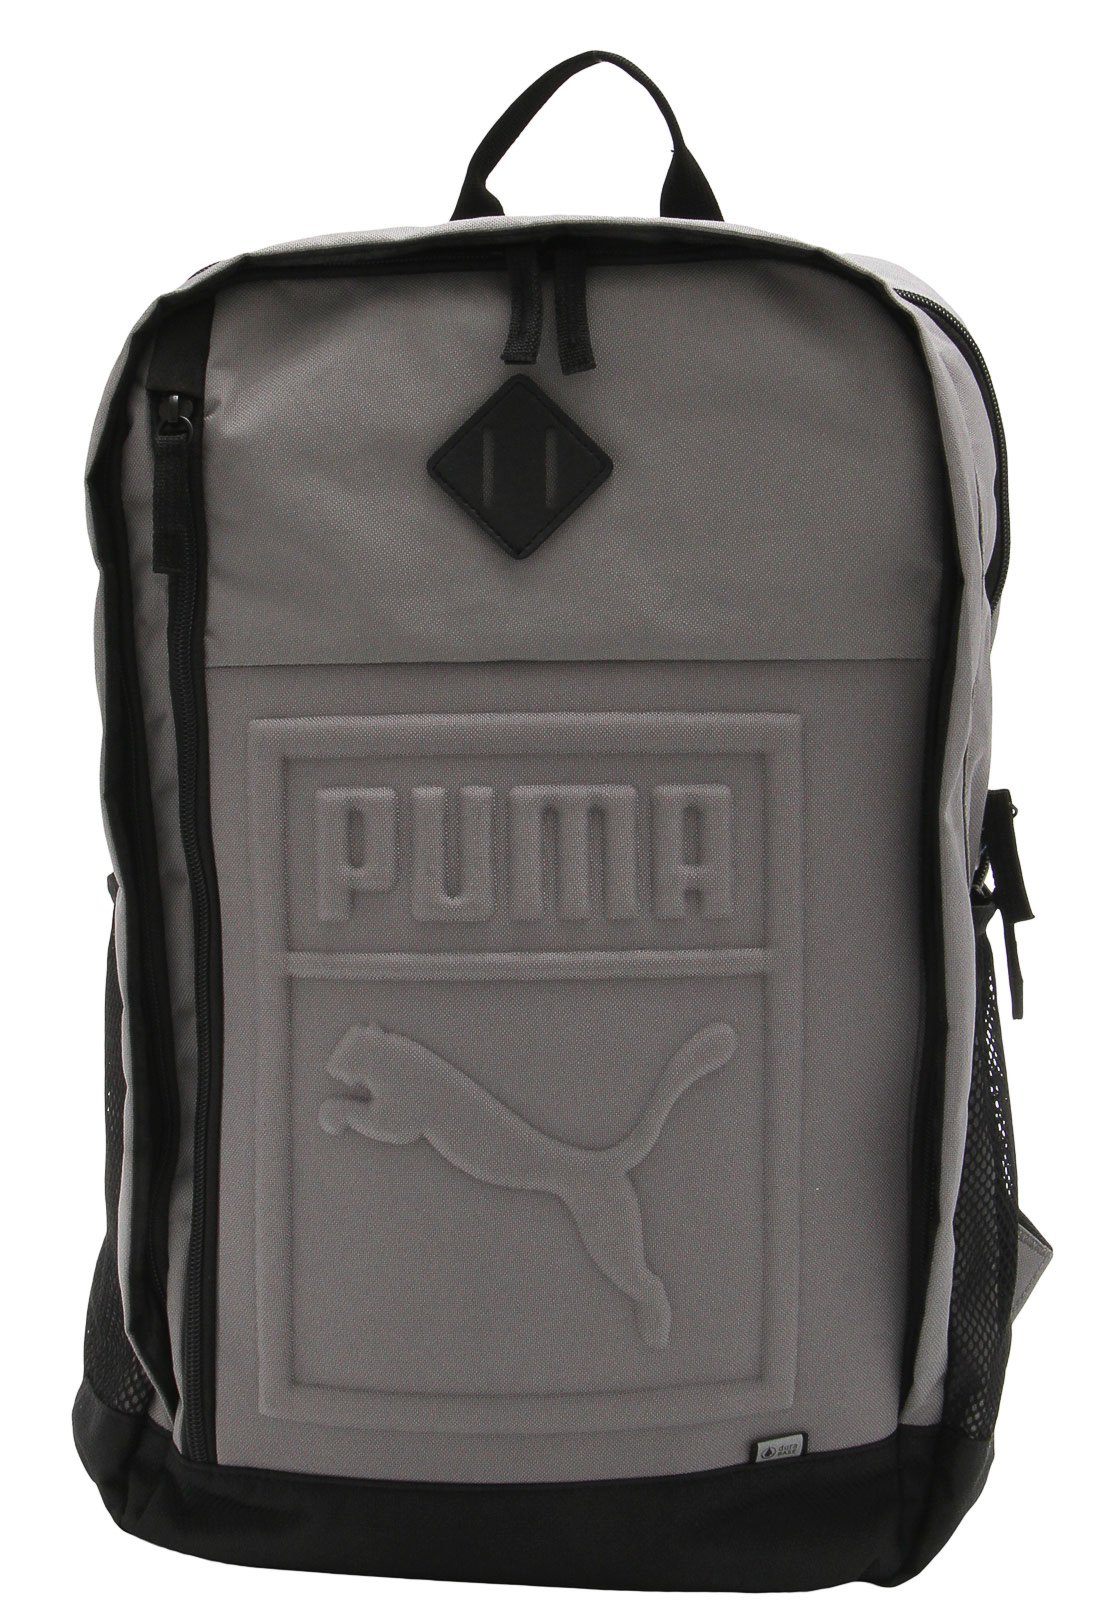 mochila puma s backpack